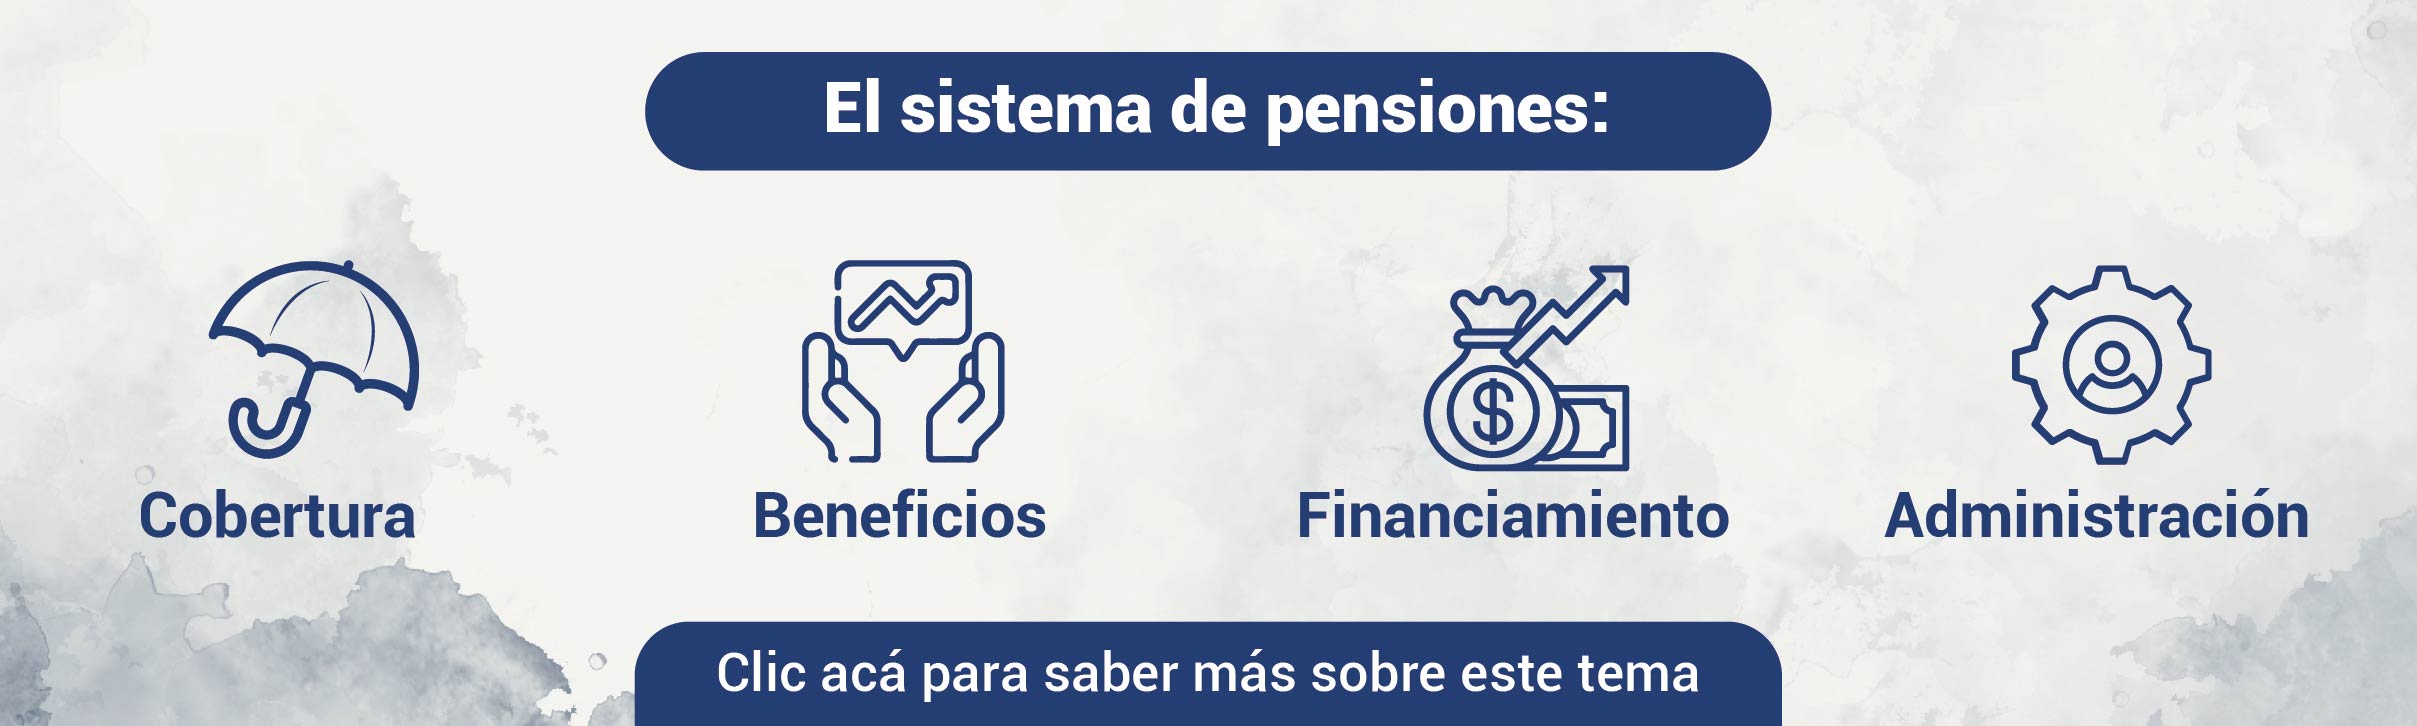 Banner_sistema_de_pensiones.jpeg